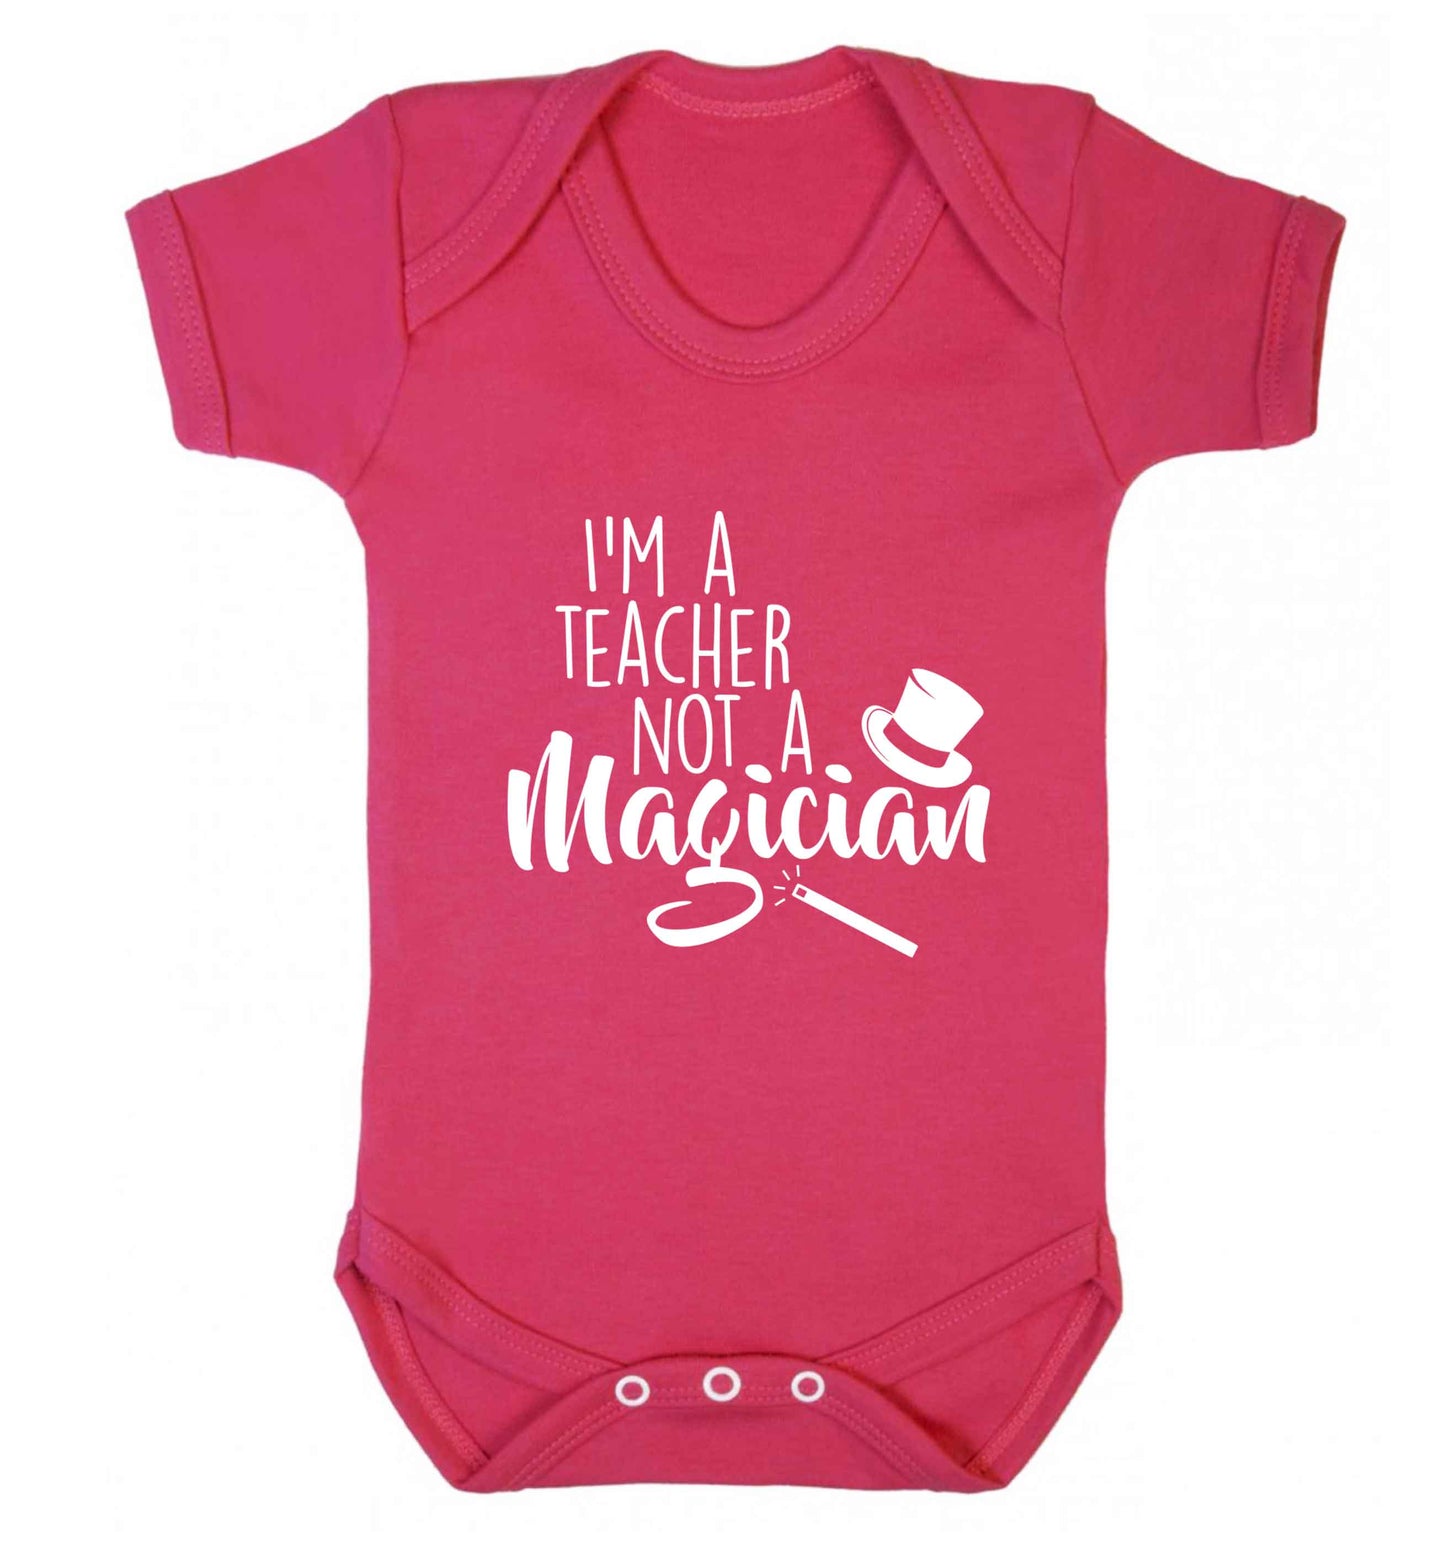 I'm a teacher not a magician baby vest dark pink 18-24 months